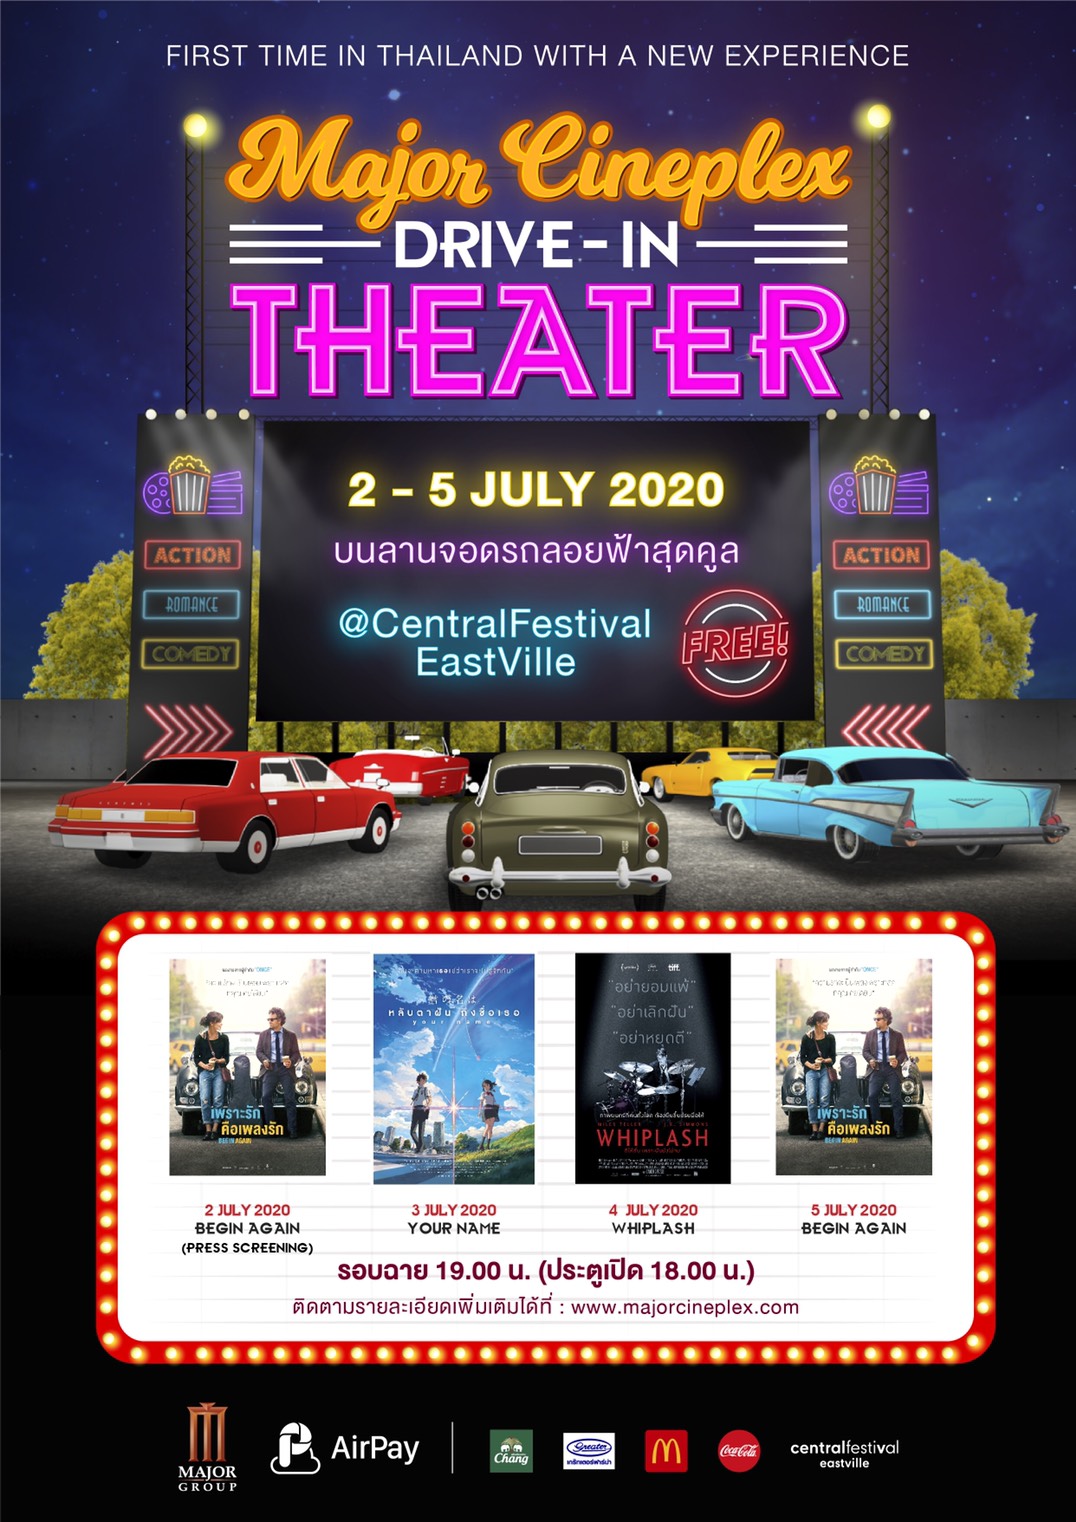 ครั้งแรกในประเทศไทย! เมเจอร์ ร่วมกับ แอร์เพย์ จัด Drive-In Theater ลอยฟ้าสุดคูล! 2-5 กรกฎาคมนี้ ลุ้นรับบัตรเข้าชมฟรี!!!